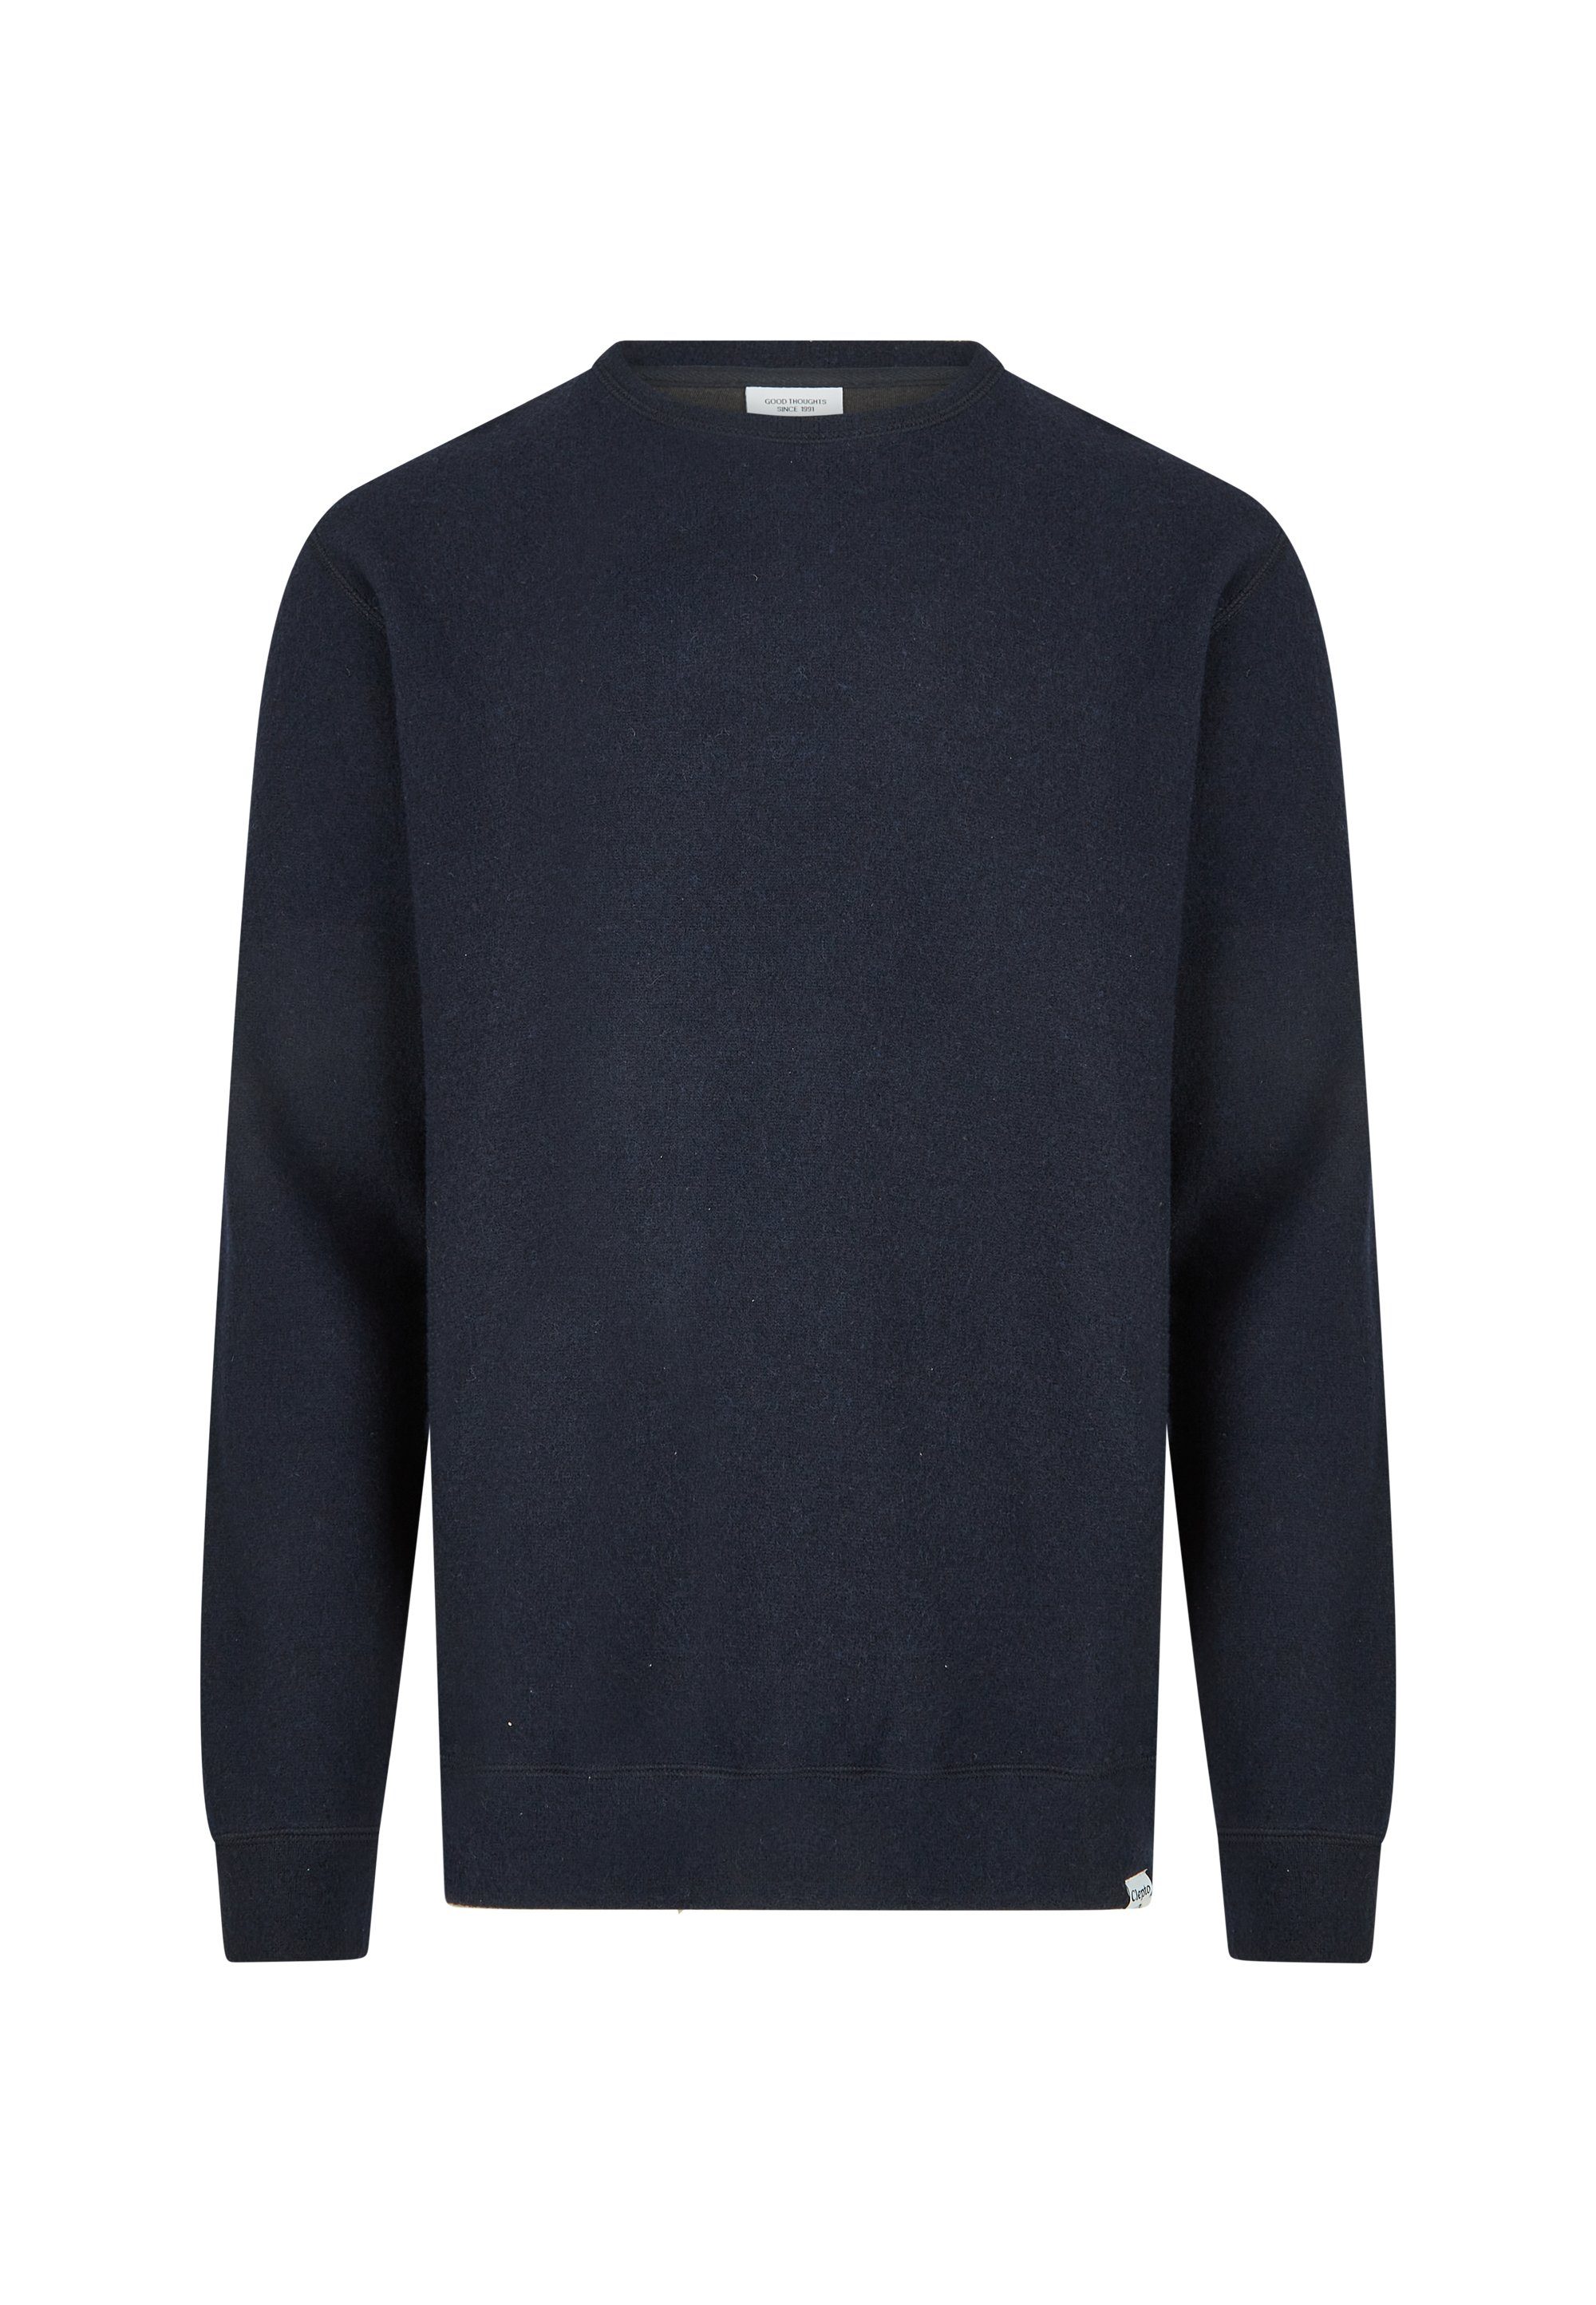 Wolle Sweatshirt aus Cleptomanicx gebondeter blau Noitch